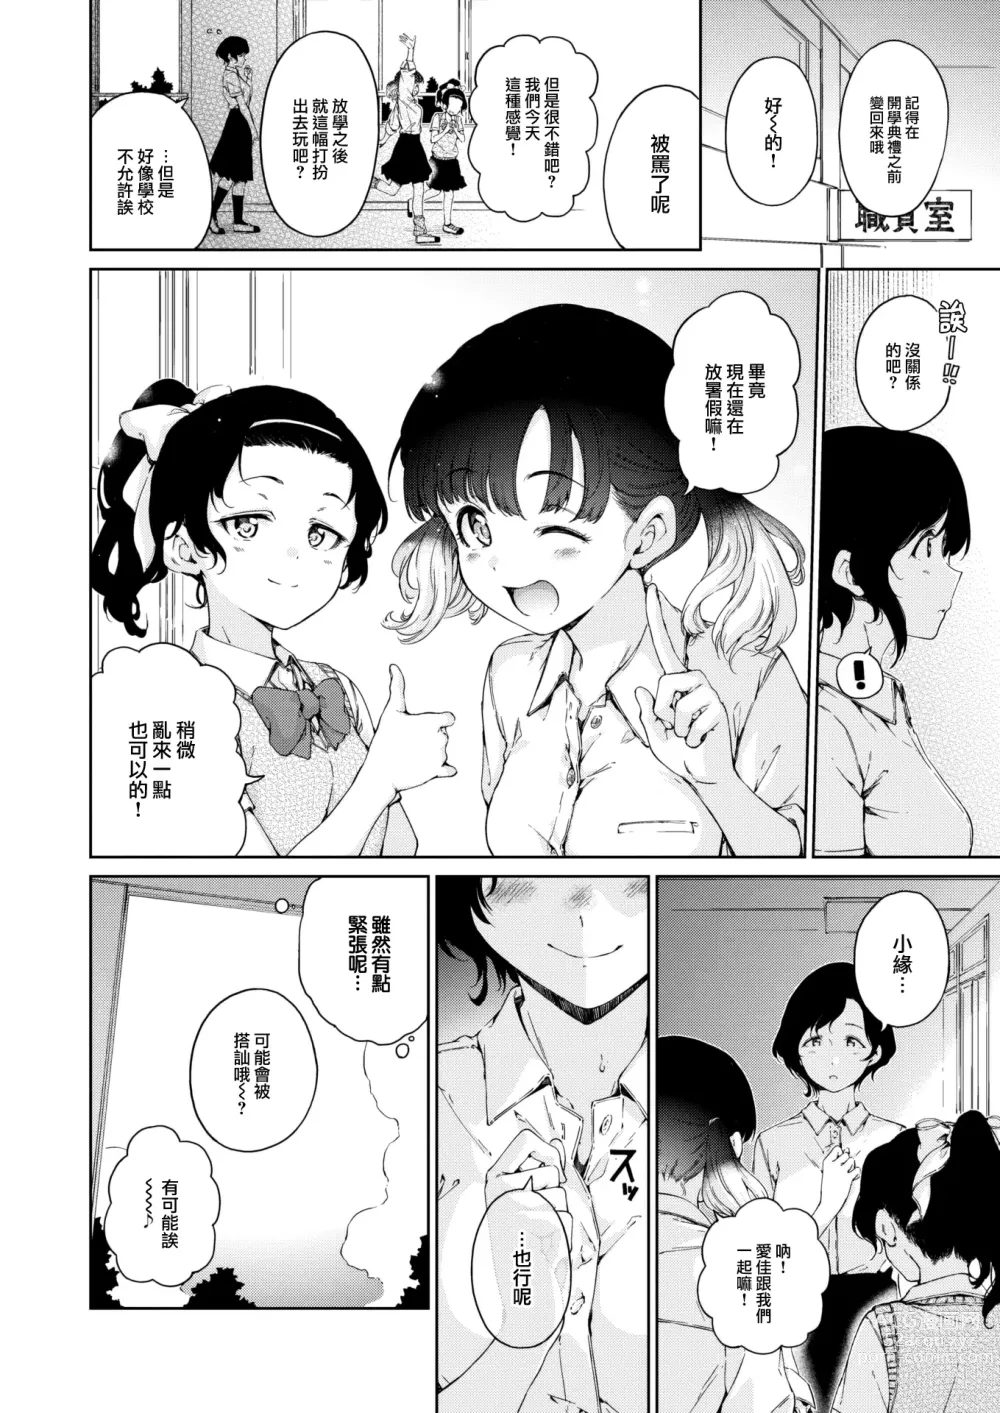 Page 5 of manga Natsu, Kibun Netsukkikyuu.